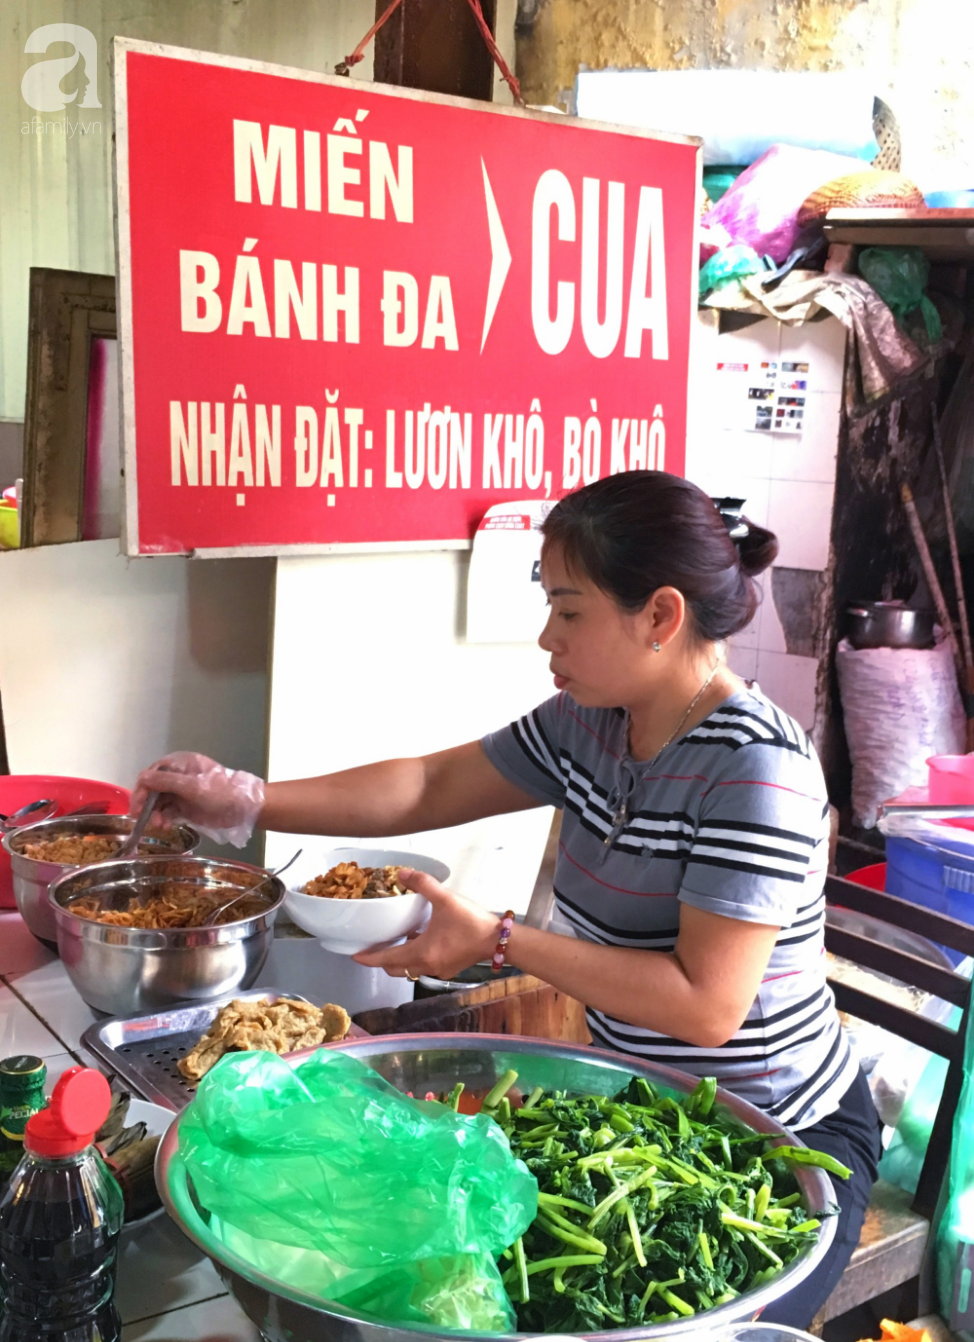 Khám phá quán bánh đa cua 25 năm tuổi trong chợ Châu Long khiến nhiều người khen tặng bánh đa cua ngon nhất Hà Nội - Ảnh 2.